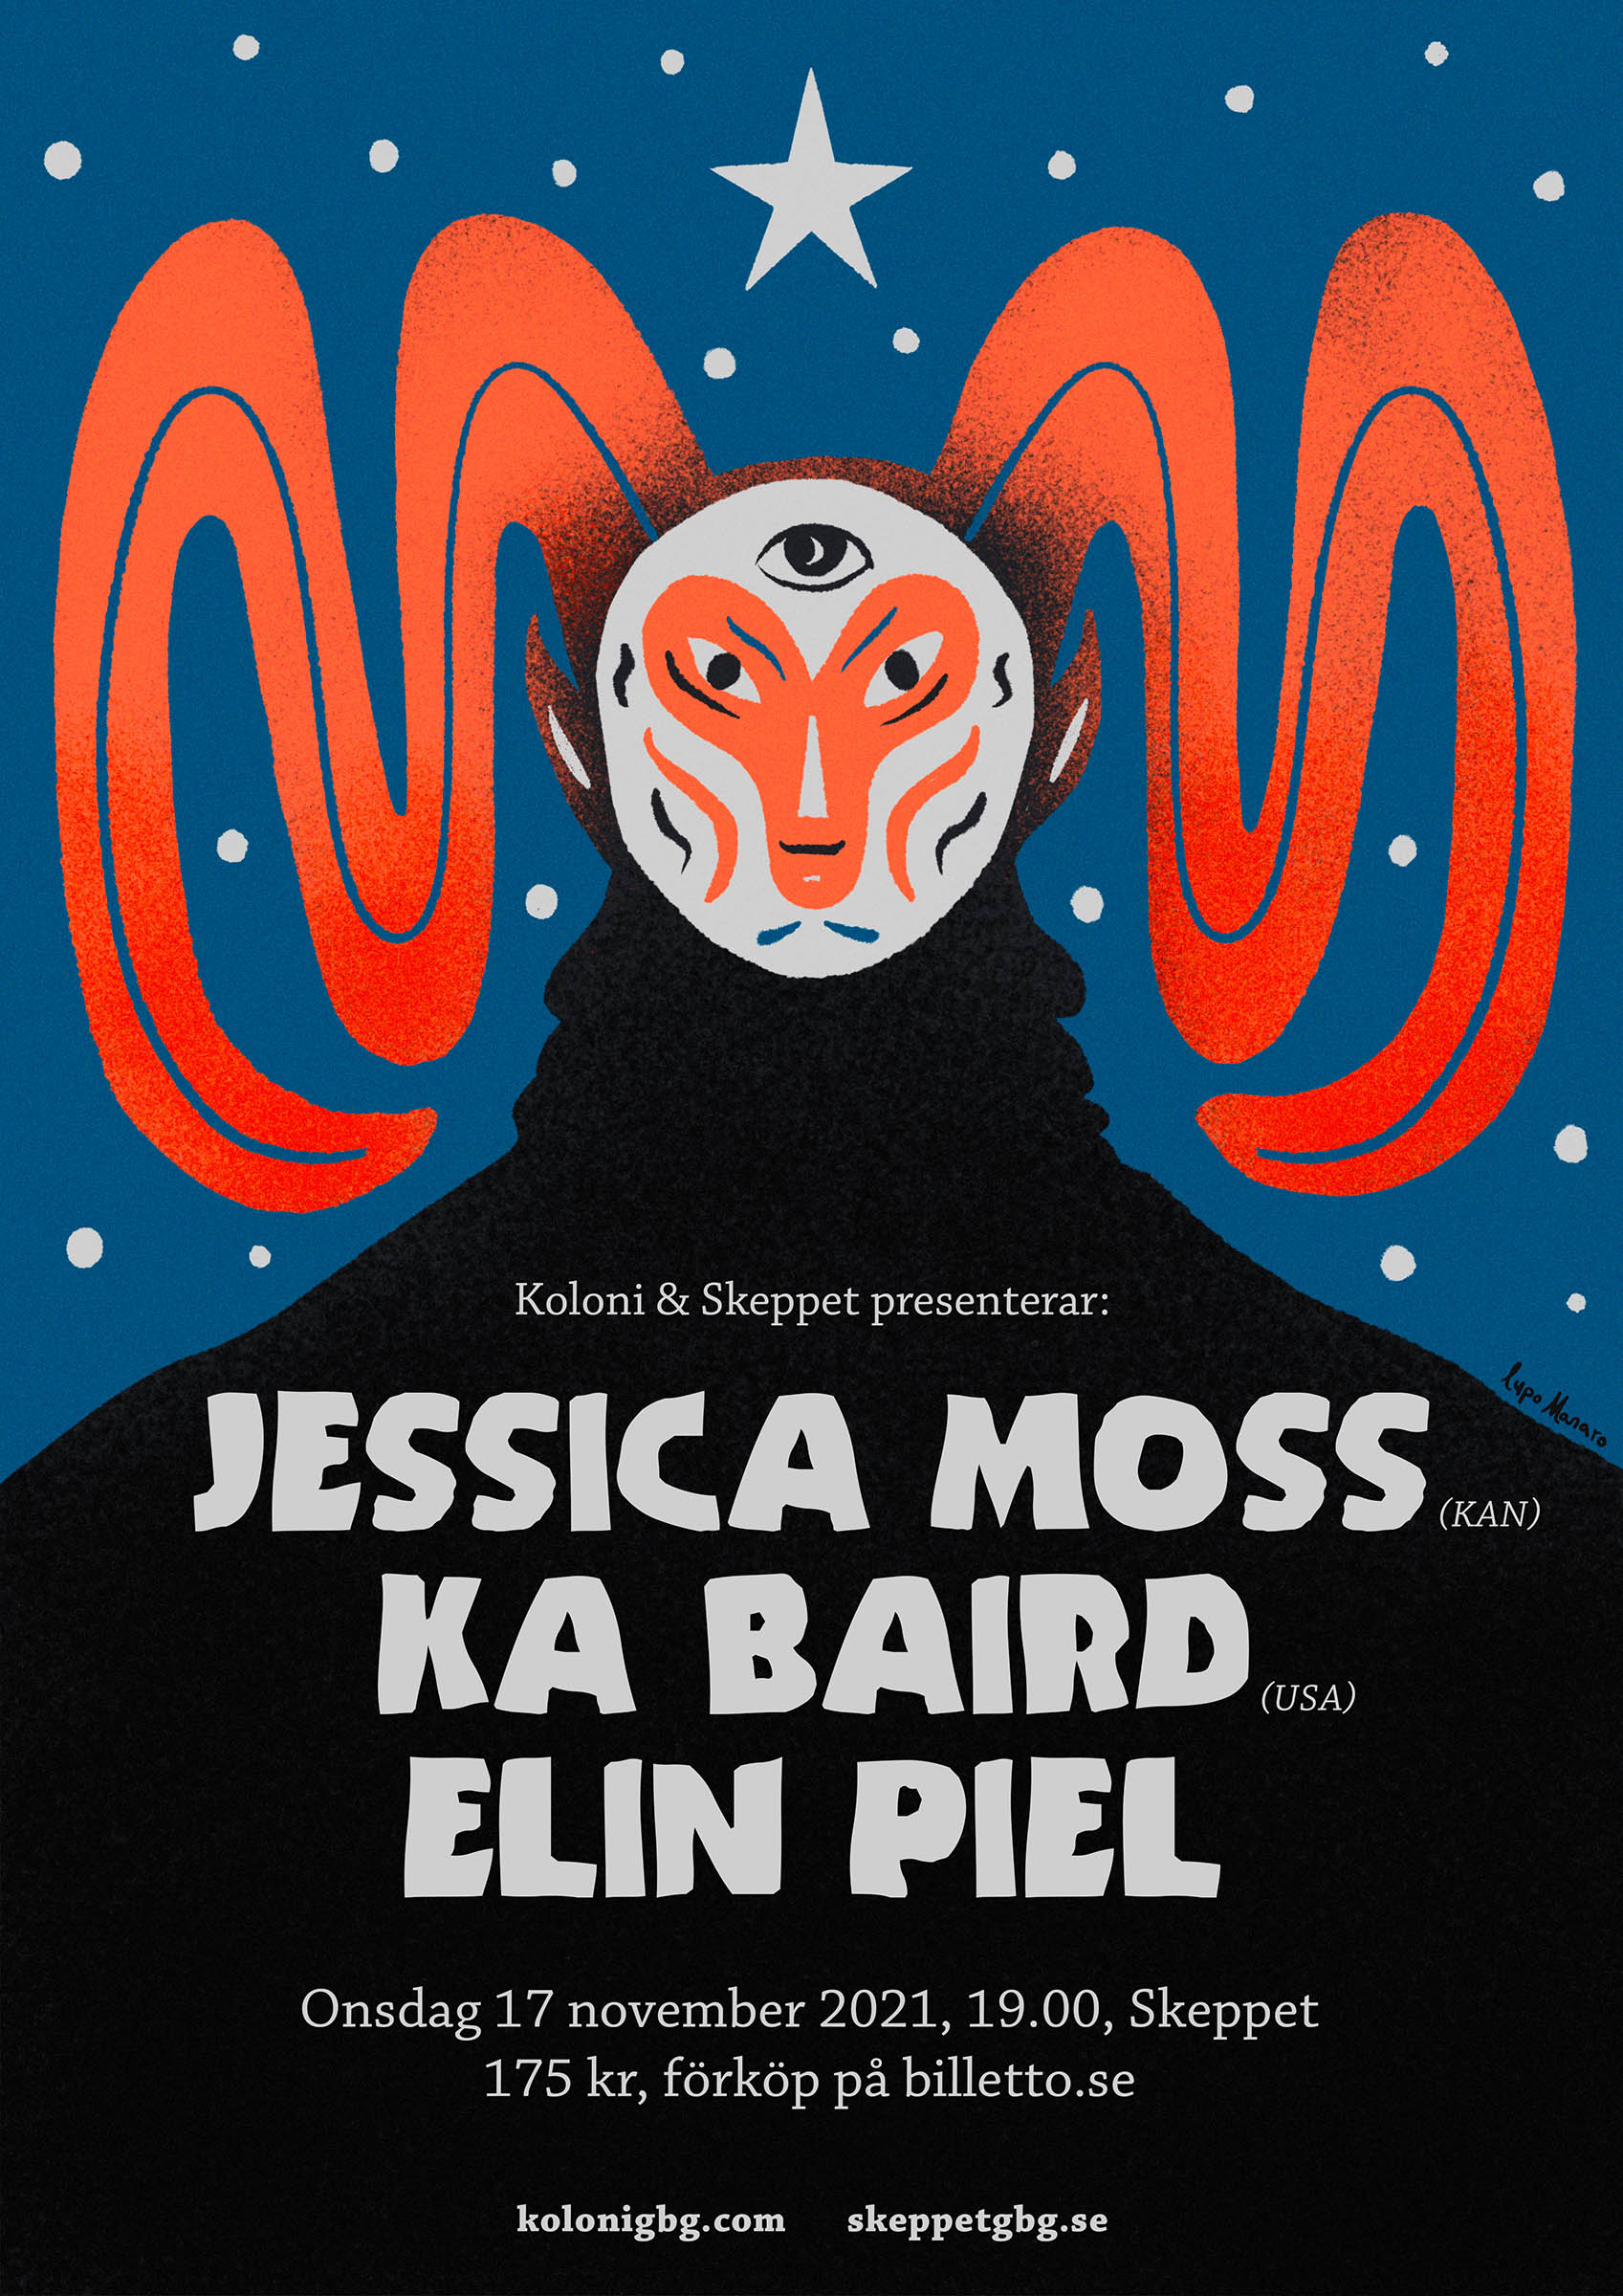 Koloni – Jessica Moss, Ka Baird and Elin Piel